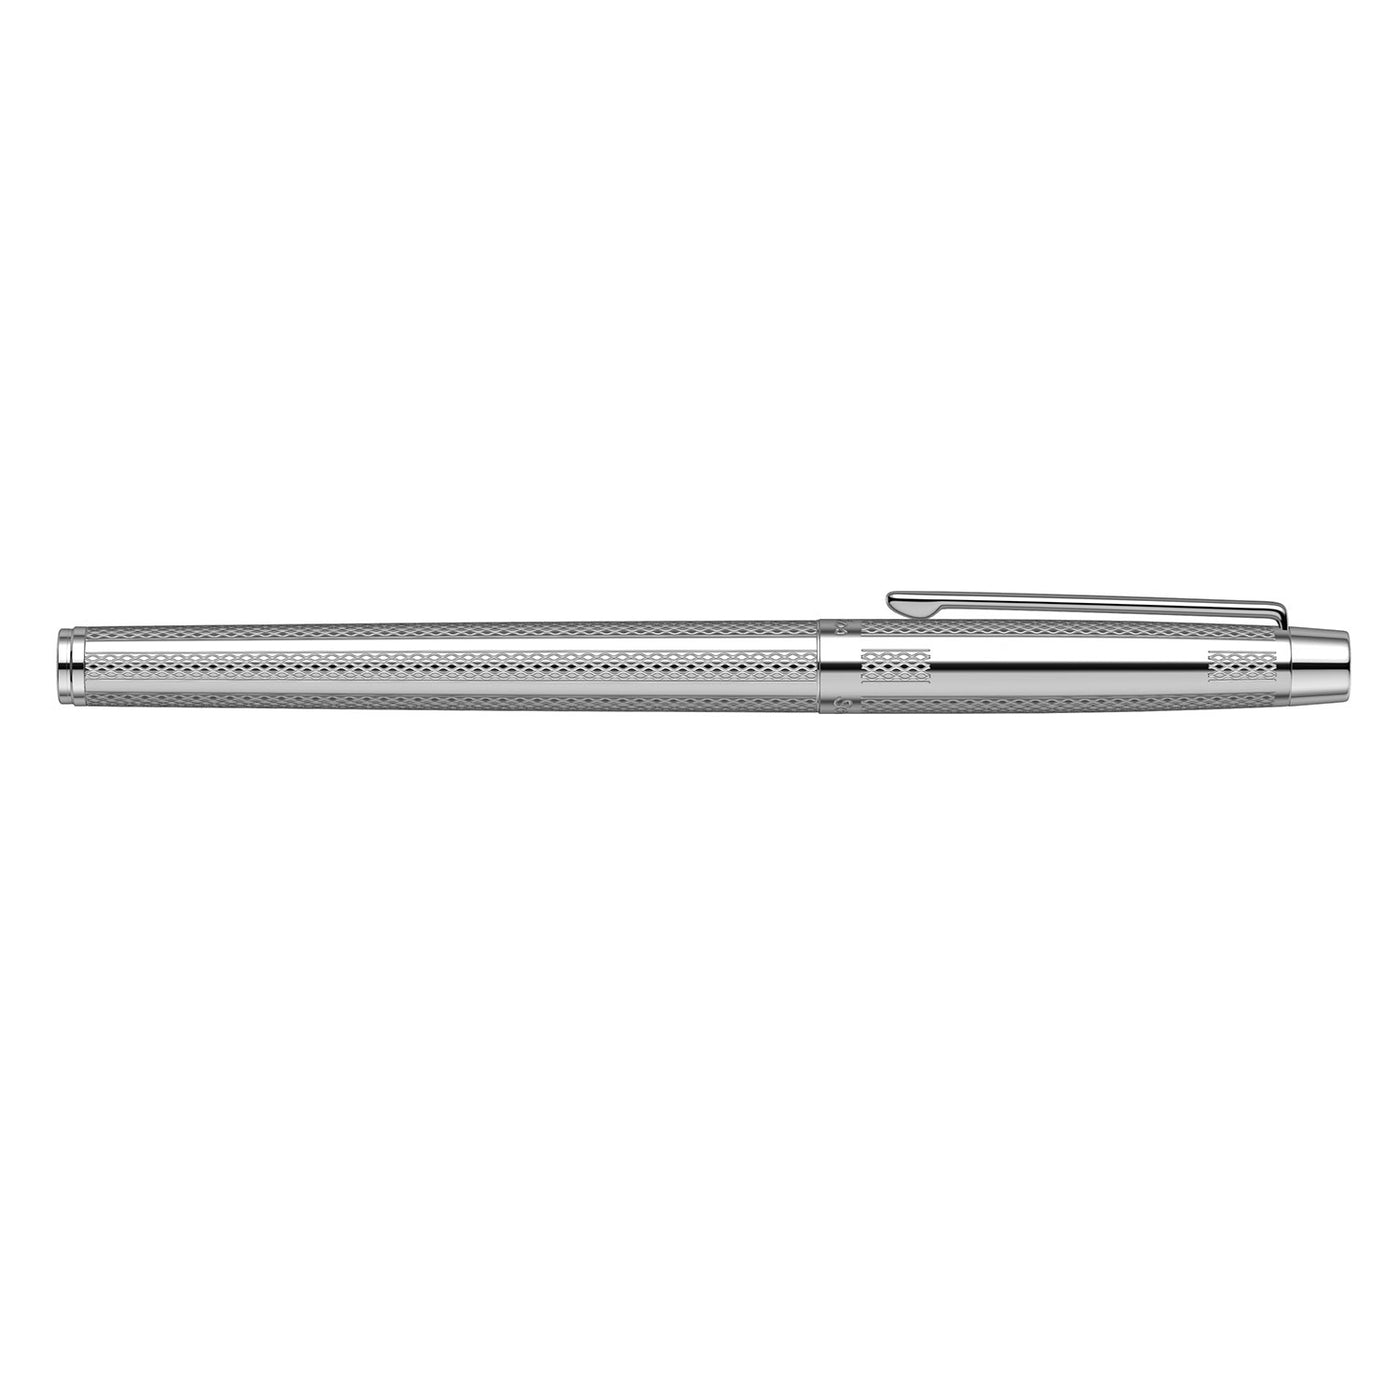 Scrikss Venus 722 Fountain Pen, Chrome / Chrome Trim - Steel Nib 5